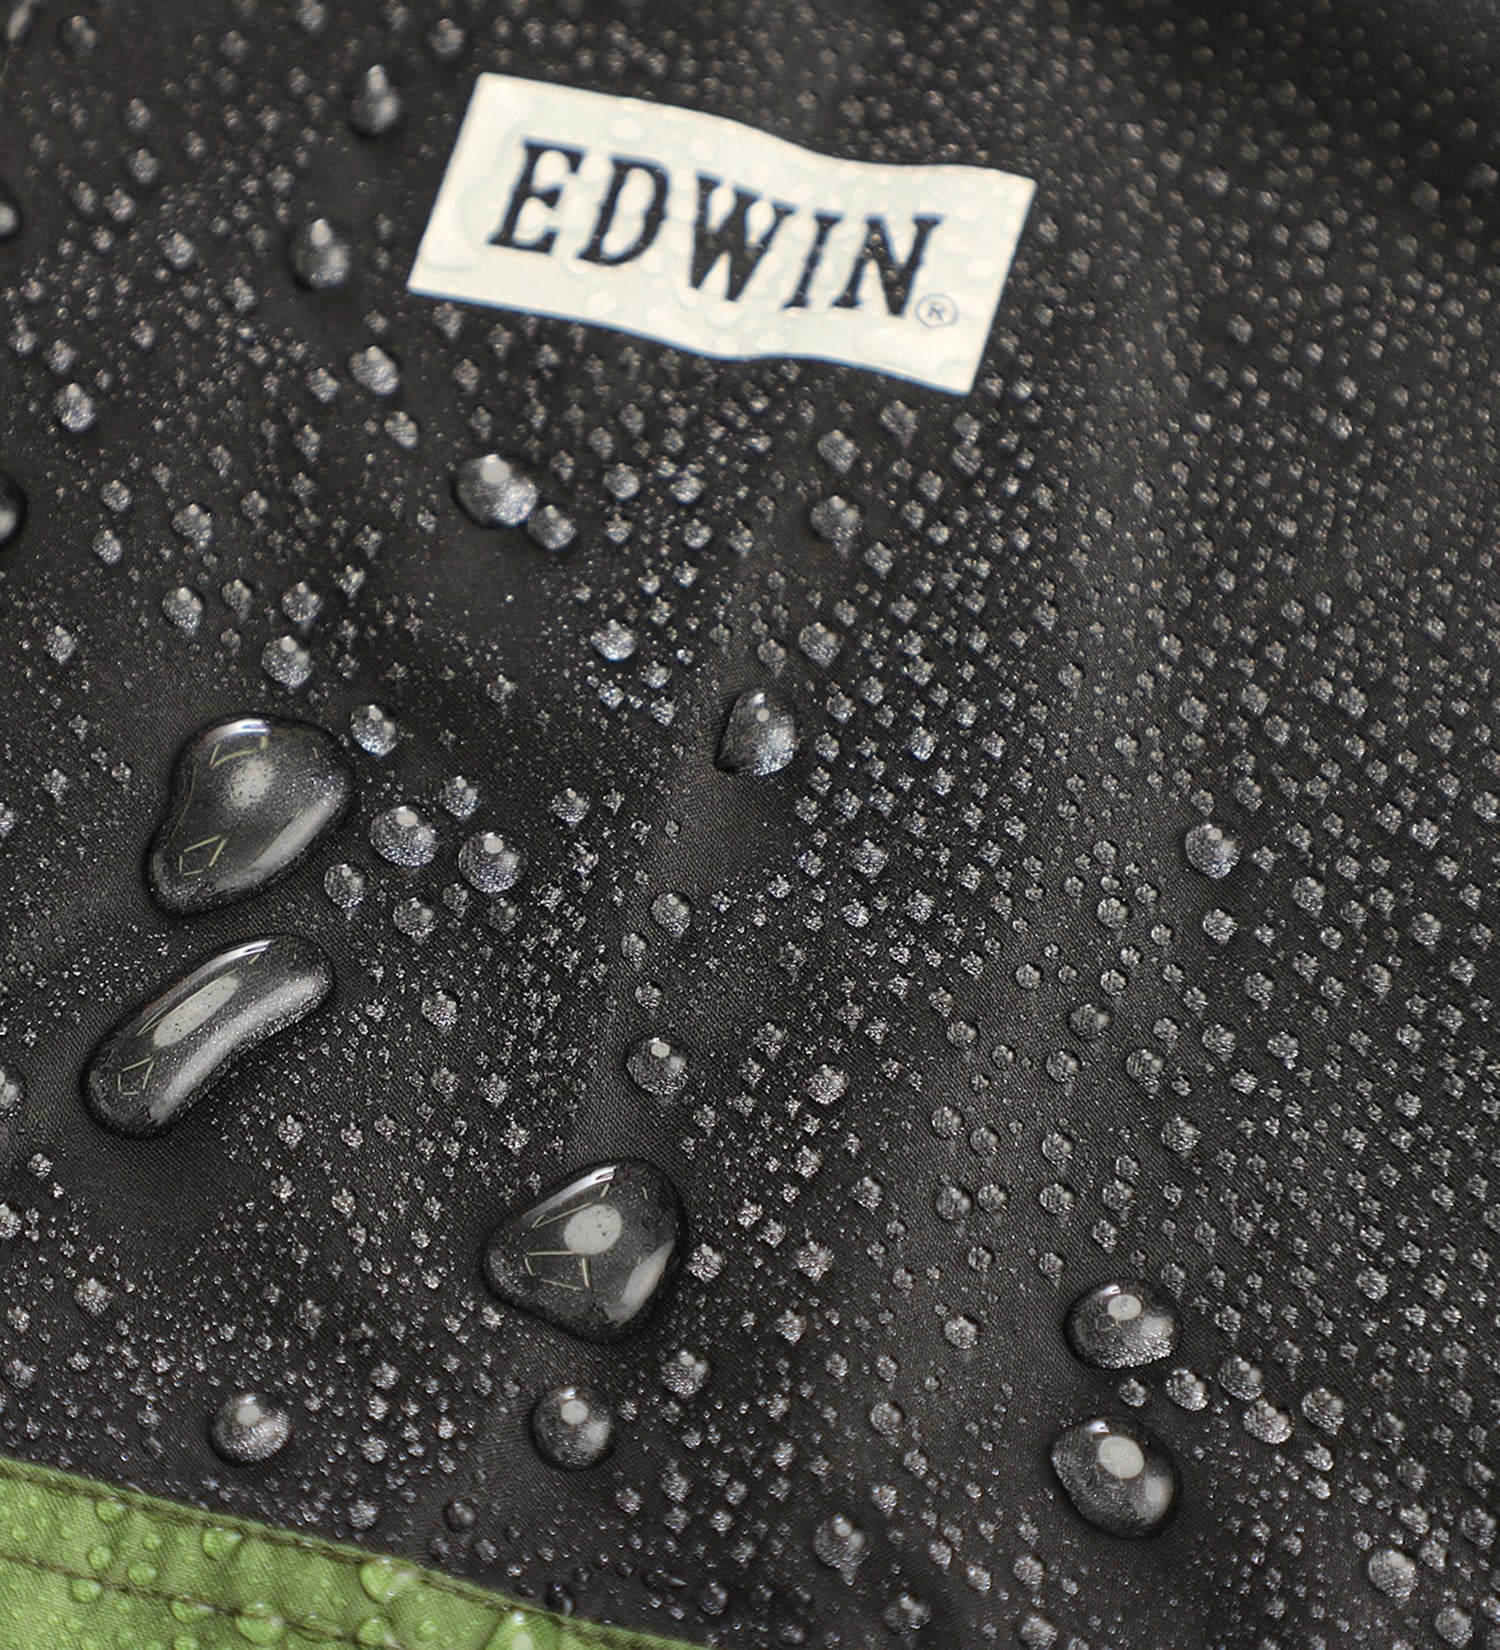 EDWIN(エドウイン)の【GW SALE】EDWIN レインロングコート|ファッション雑貨/レインウェア/ポンチョ/メンズ|カーキ